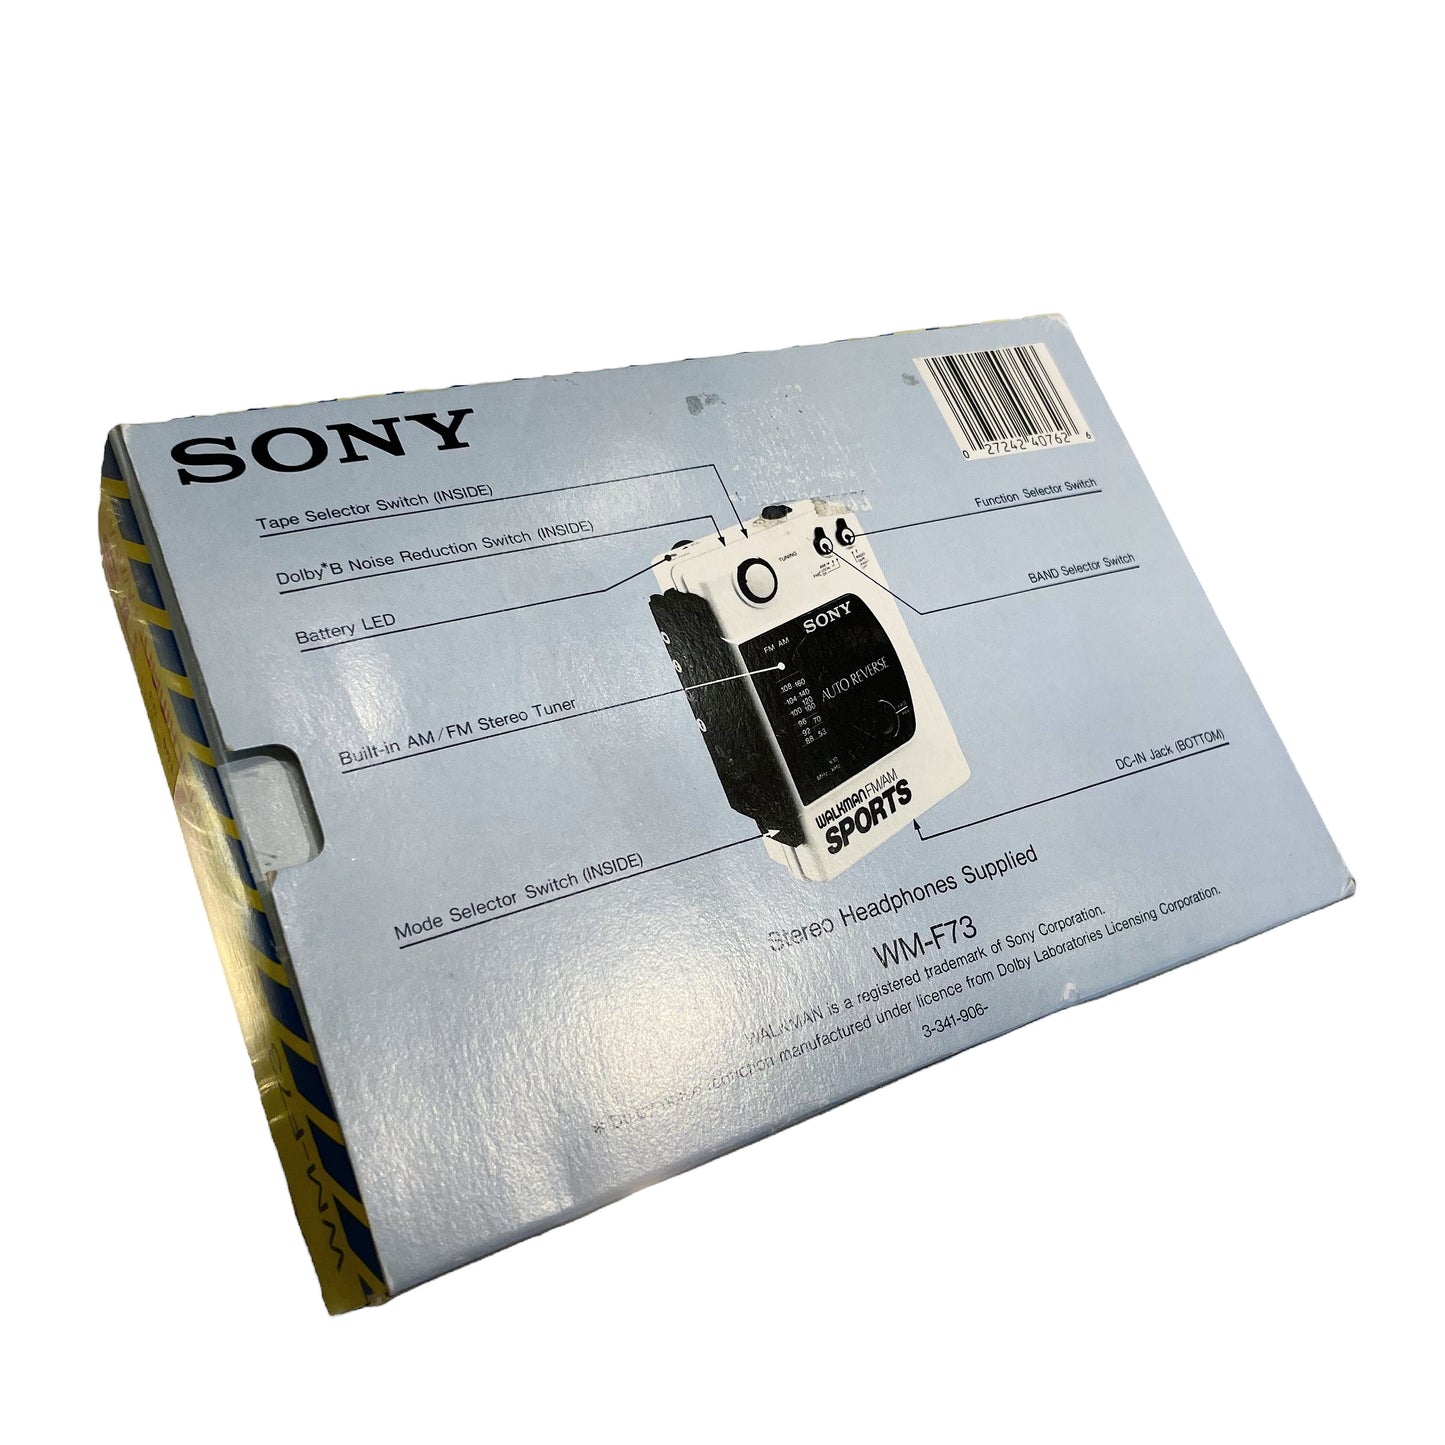 1989 SONY SPORTS ソニー スポーツ Walkman WM-F73 BOX 箱付き ウォークマン ヴィンテージ